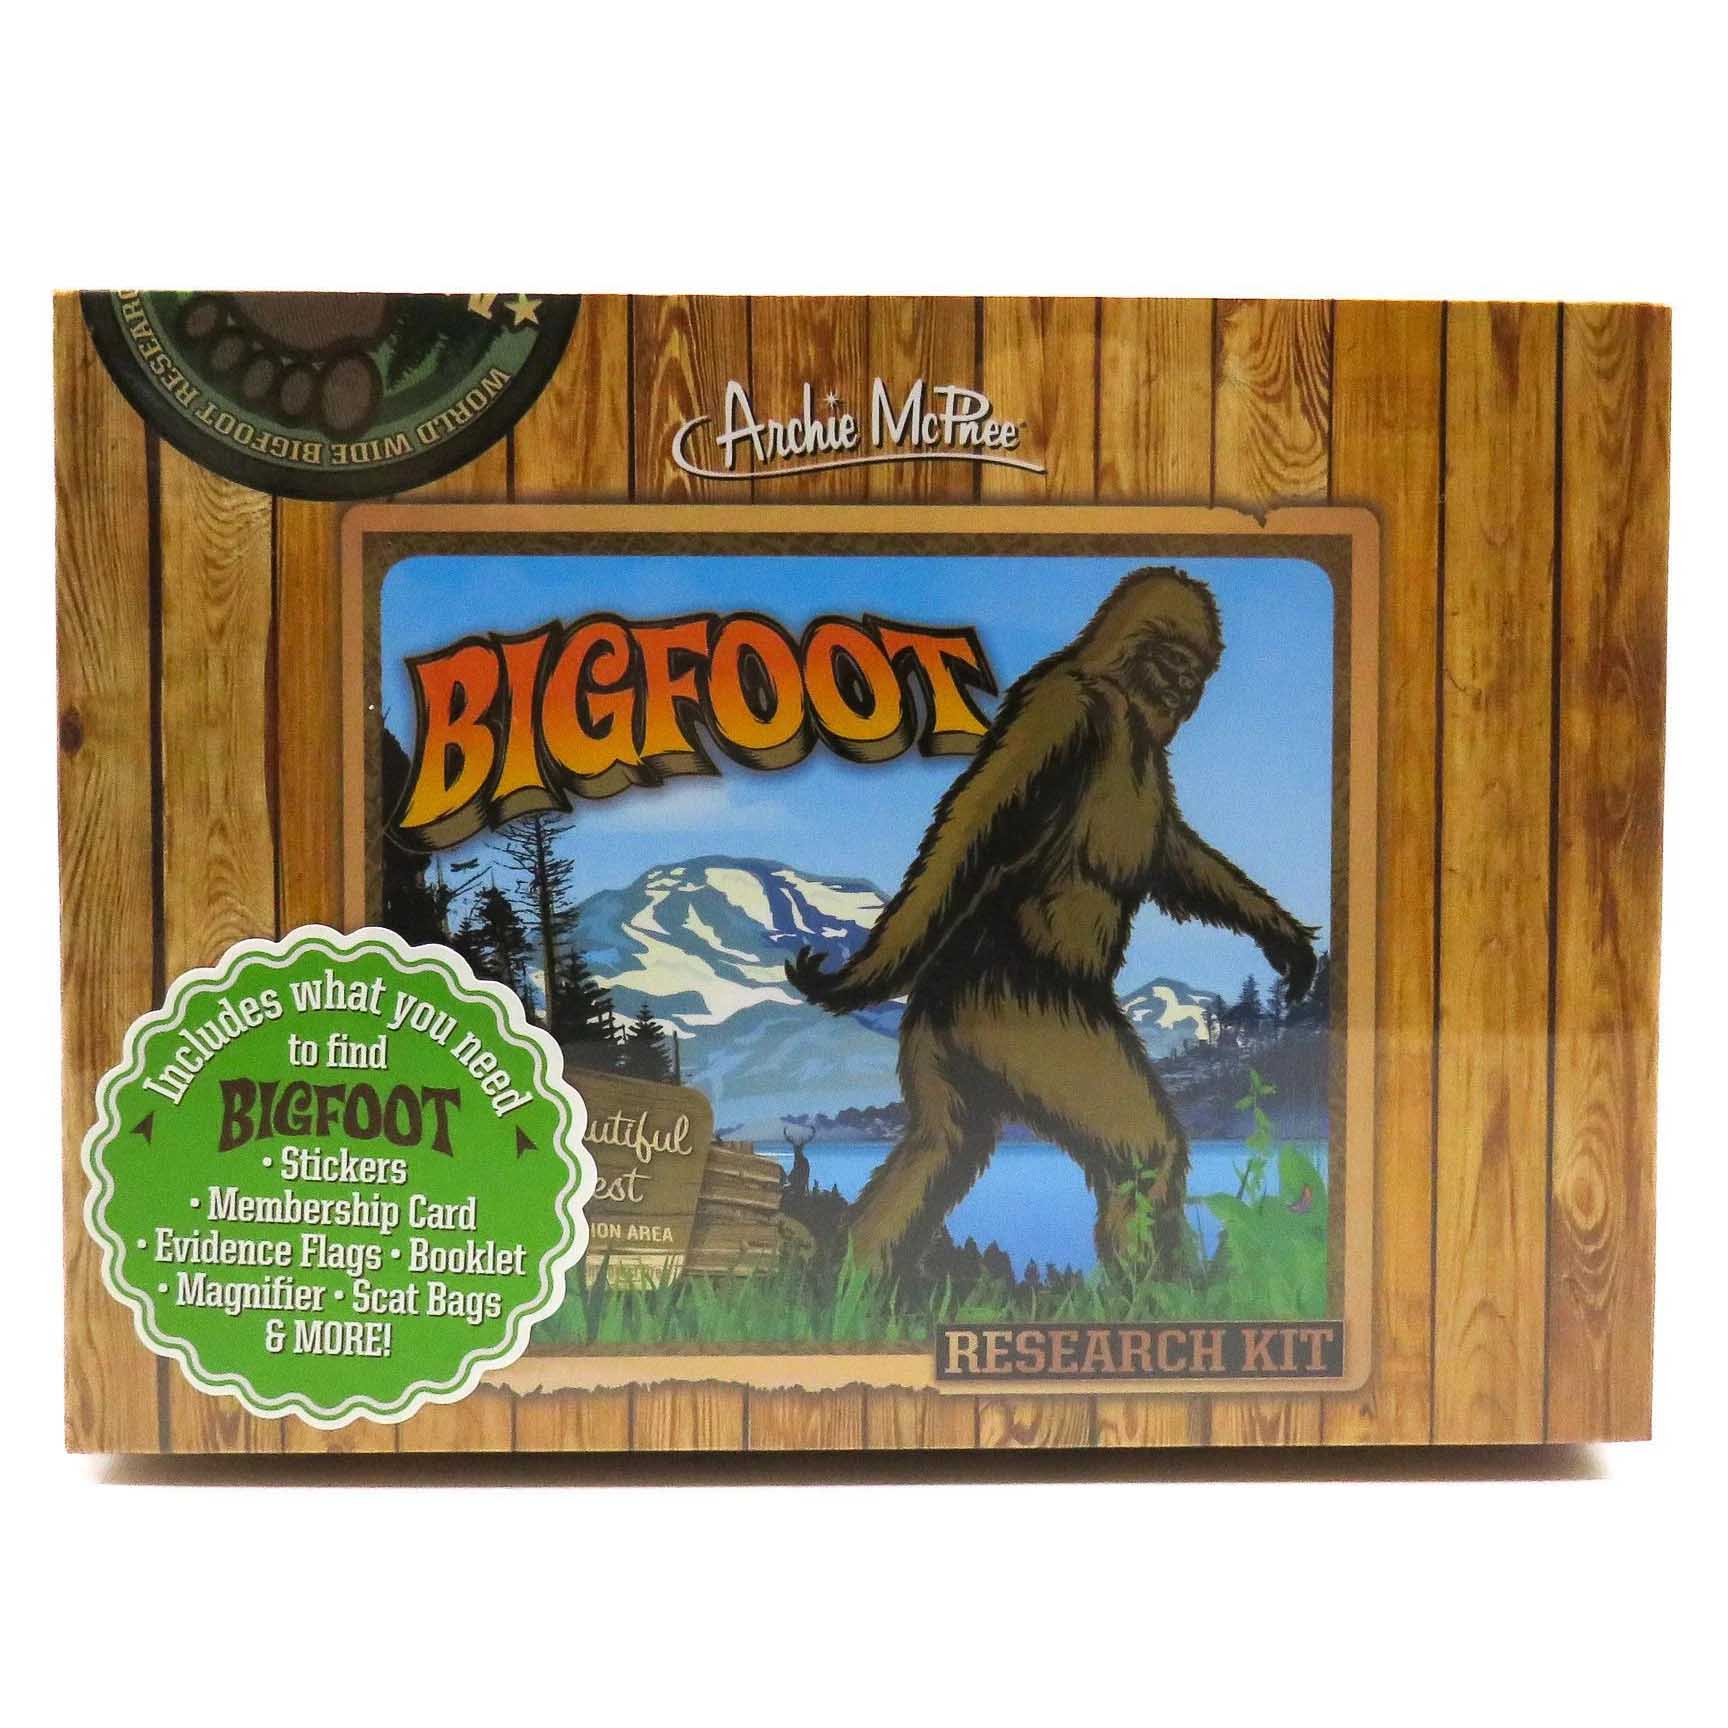 Bigfoot research kit box.